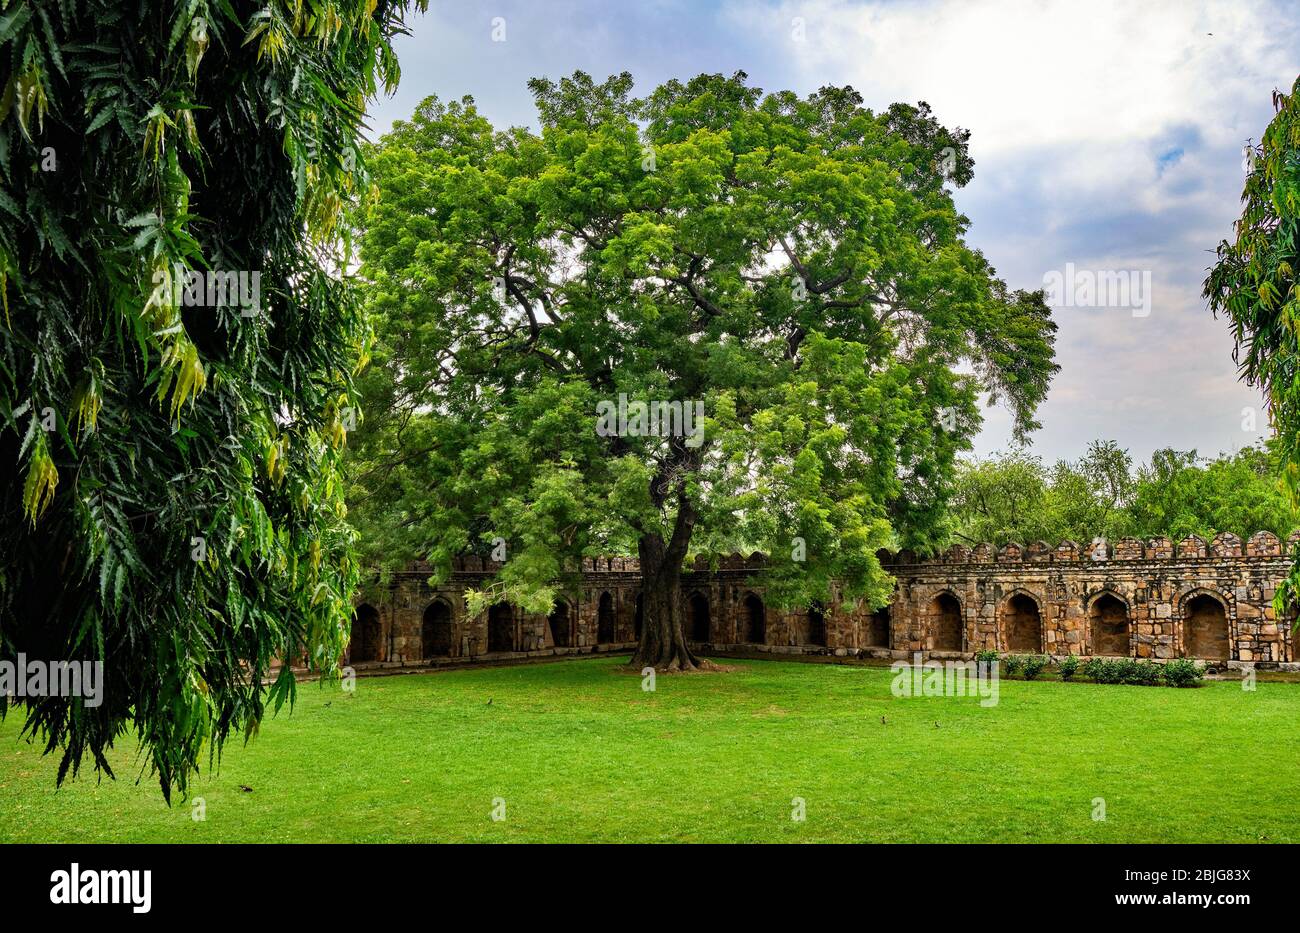 Tomb of Sikandar Lodi, ruler of the Lodi Dynasty in Lodhi Gardens in New Delhi, India Stock Photo